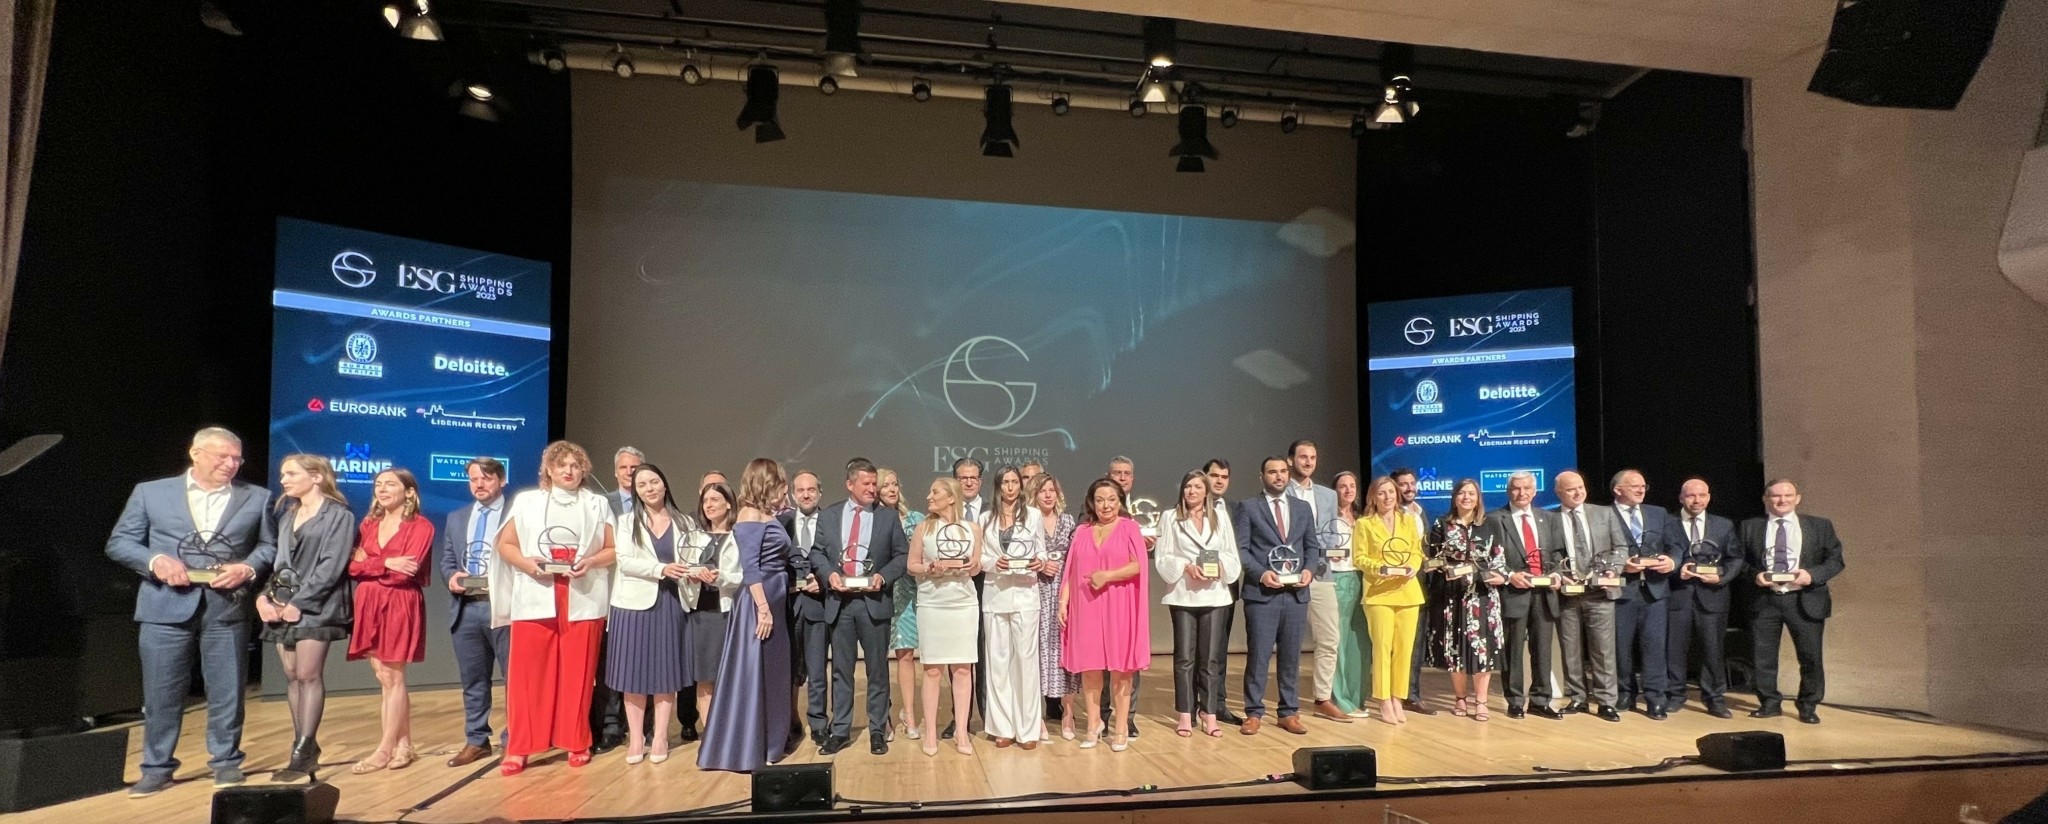 Ελληνική ναυτιλία: Οι εταιρείες που τιμήθηκαν με τα ESG Shipping Awards (pics)